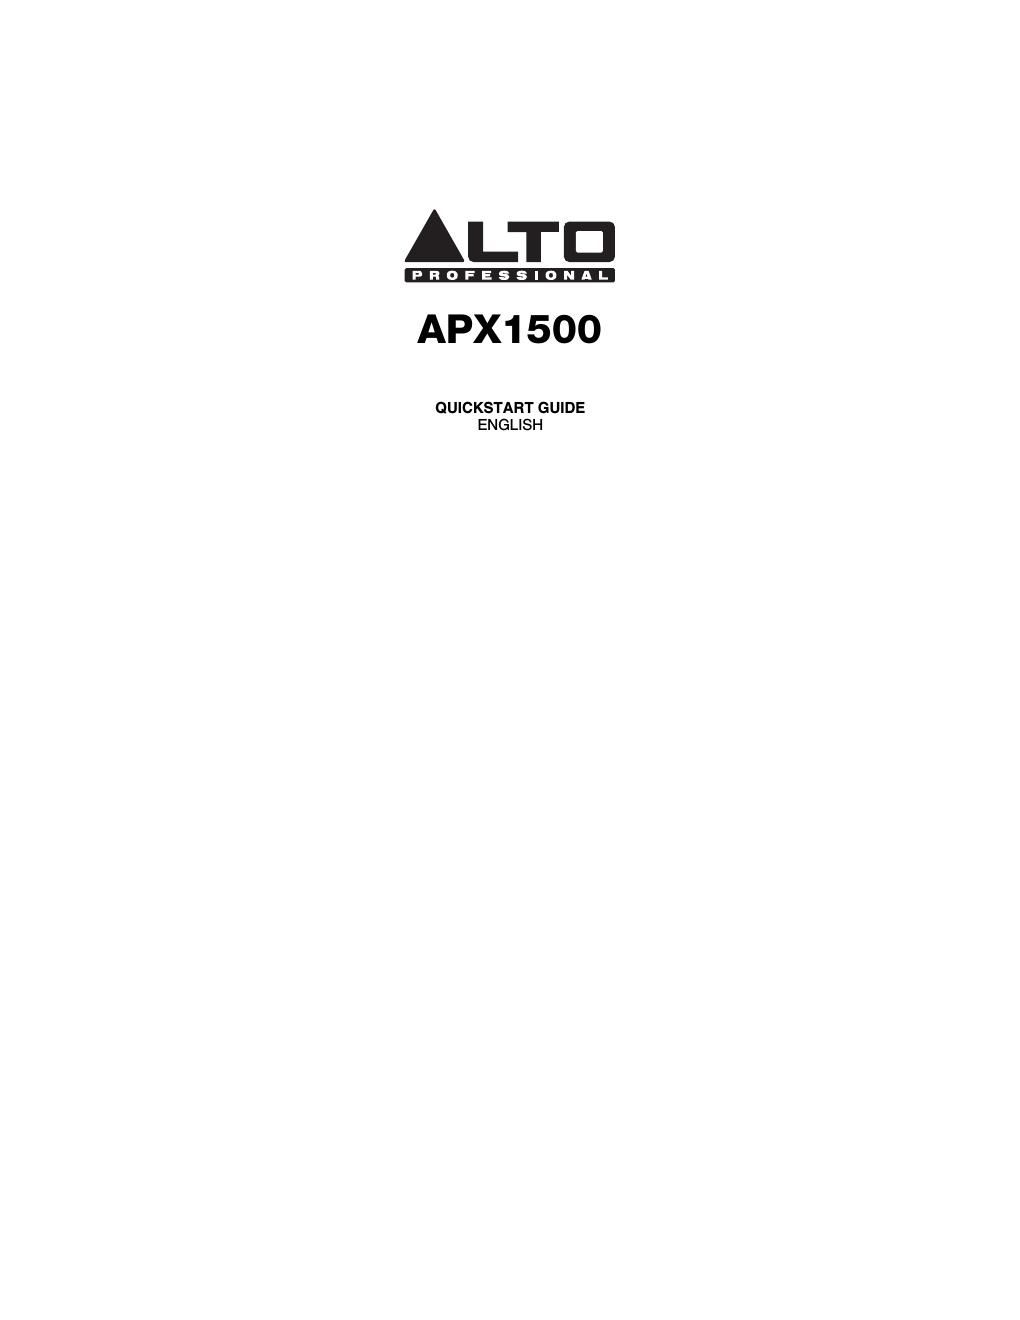 alto apx 1500 quickstart guide